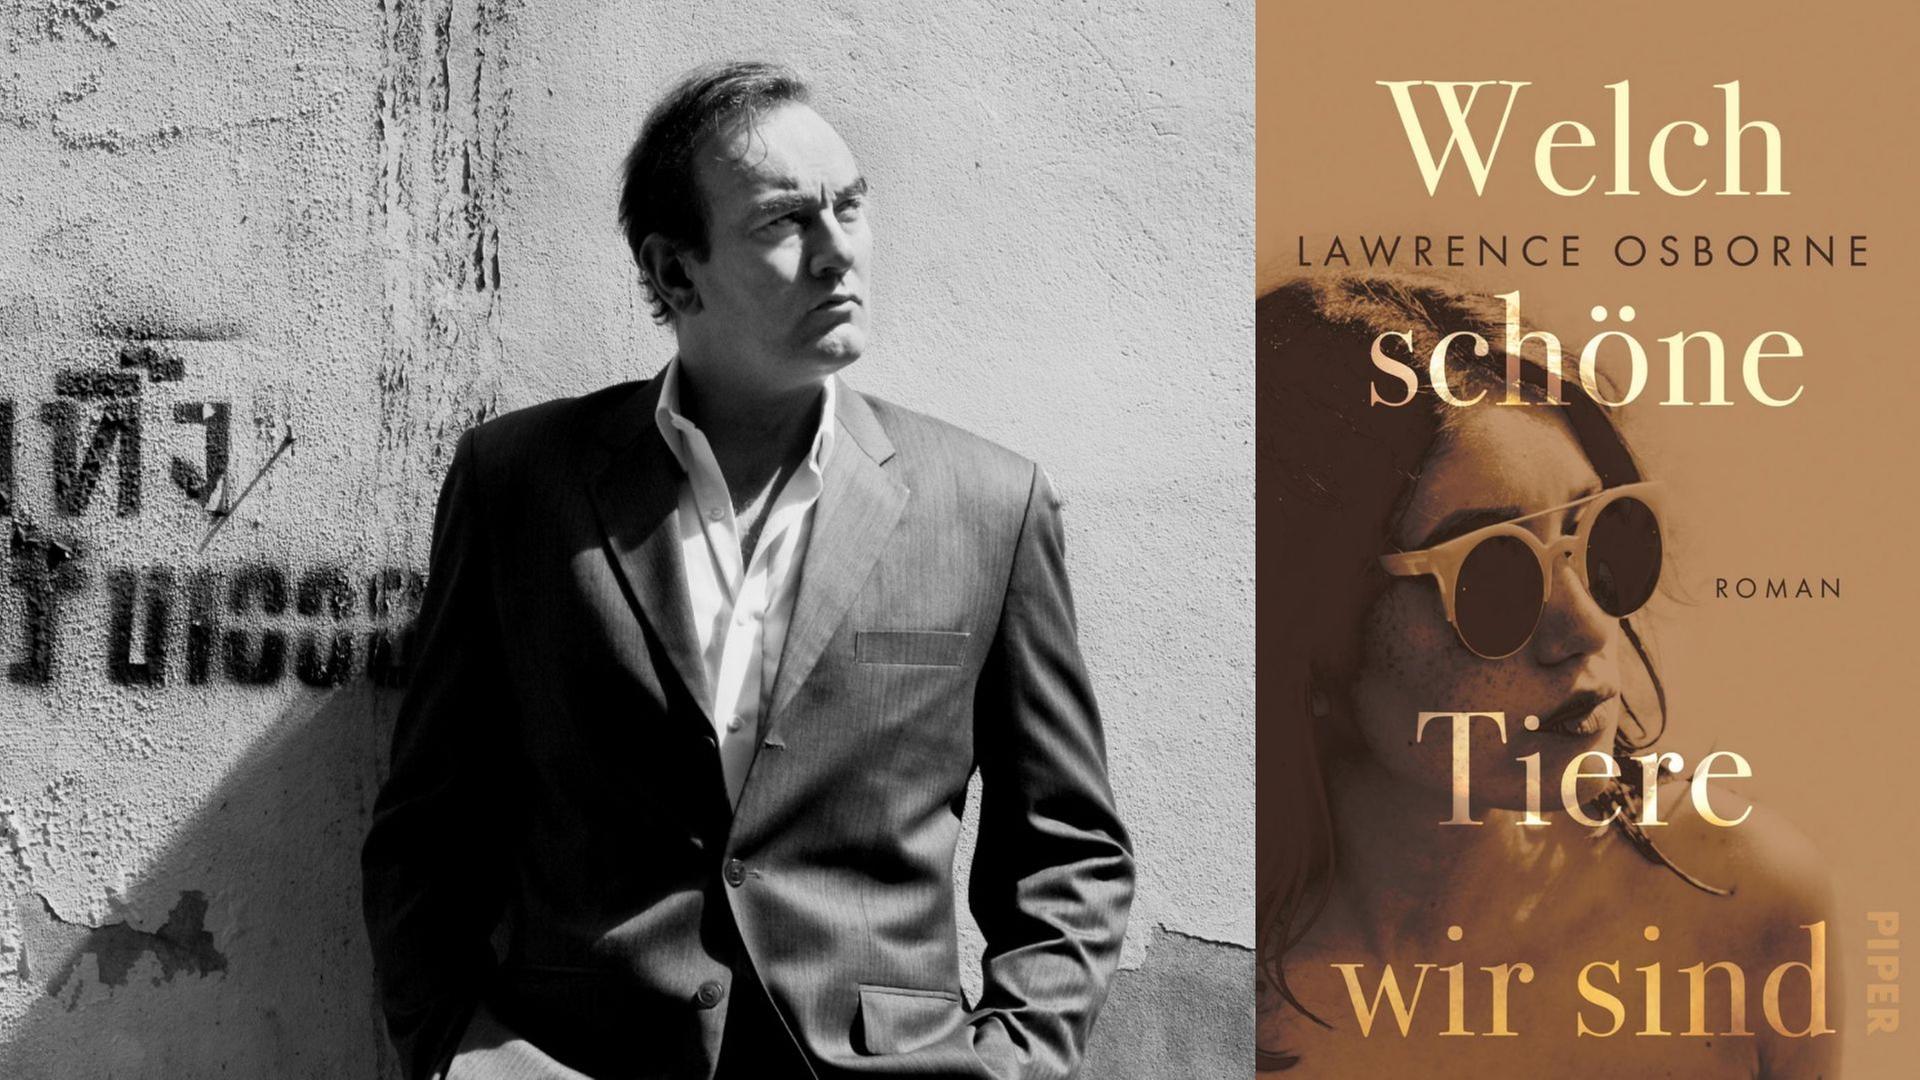 Zu sehen ist der Autor Lawrence Osborne und das Cover seines Romans "Welch schöne Tiere wir sind".